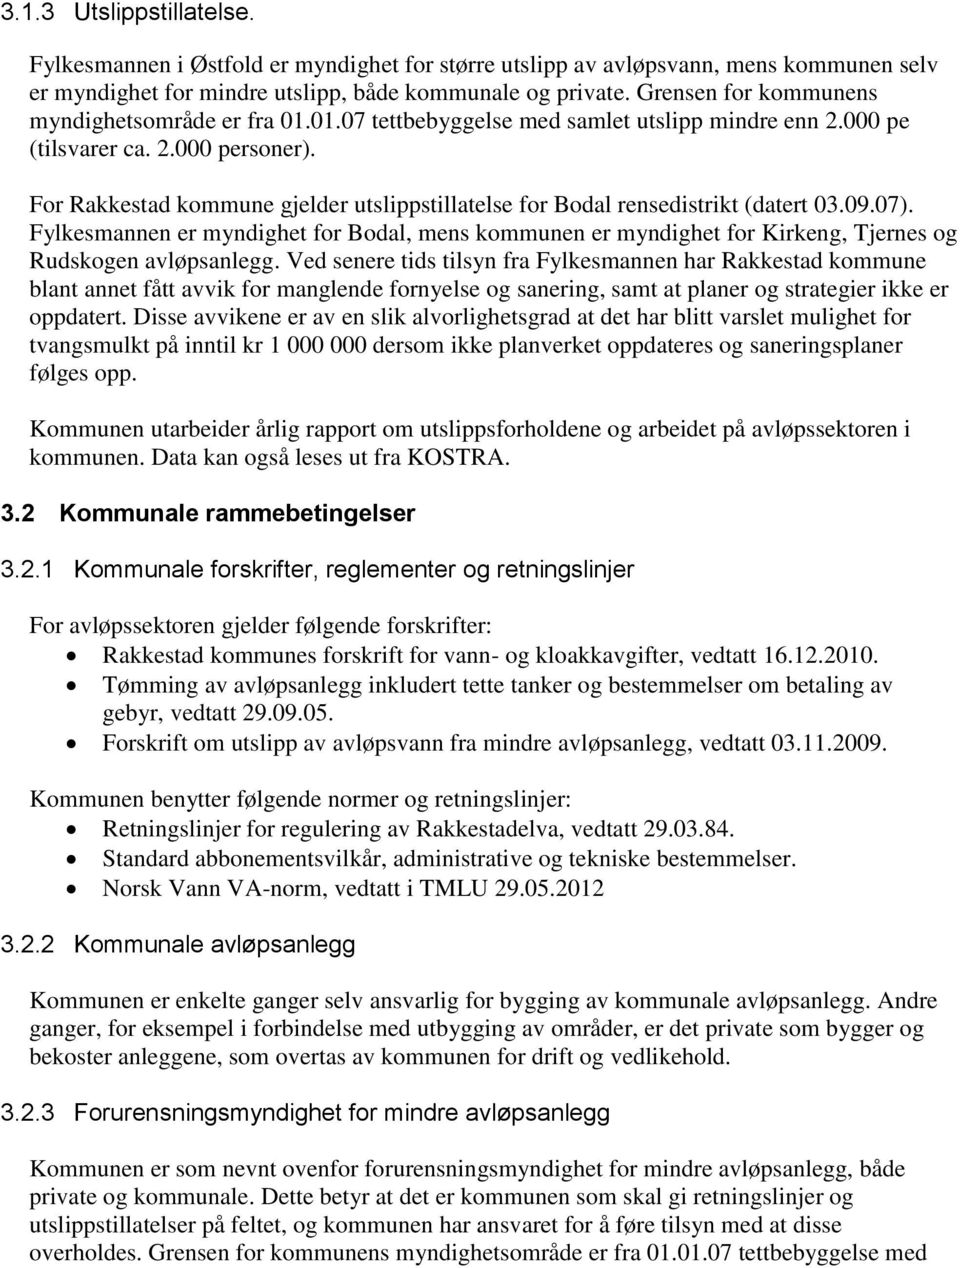 For Rakkestad kommune gjelder utslippstillatelse for Bodal rensedistrikt (datert 03.09.07).